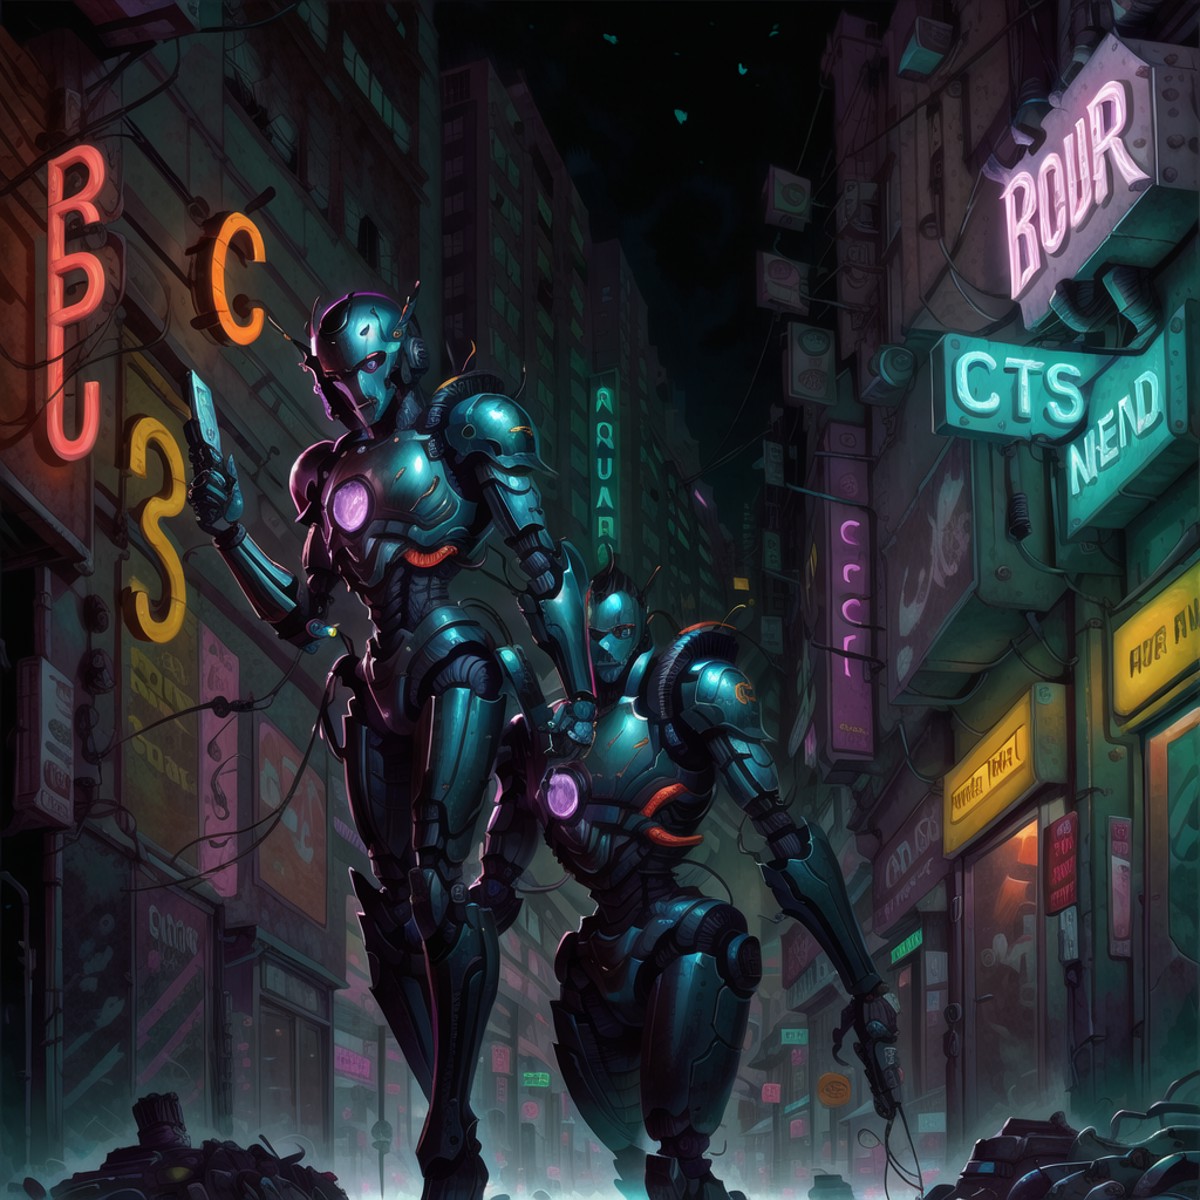 bromart, A robot in a city street, cyberpunk, closeup, realistic, high resolution, masterpiece, bokeh, neon lighting, nigh...